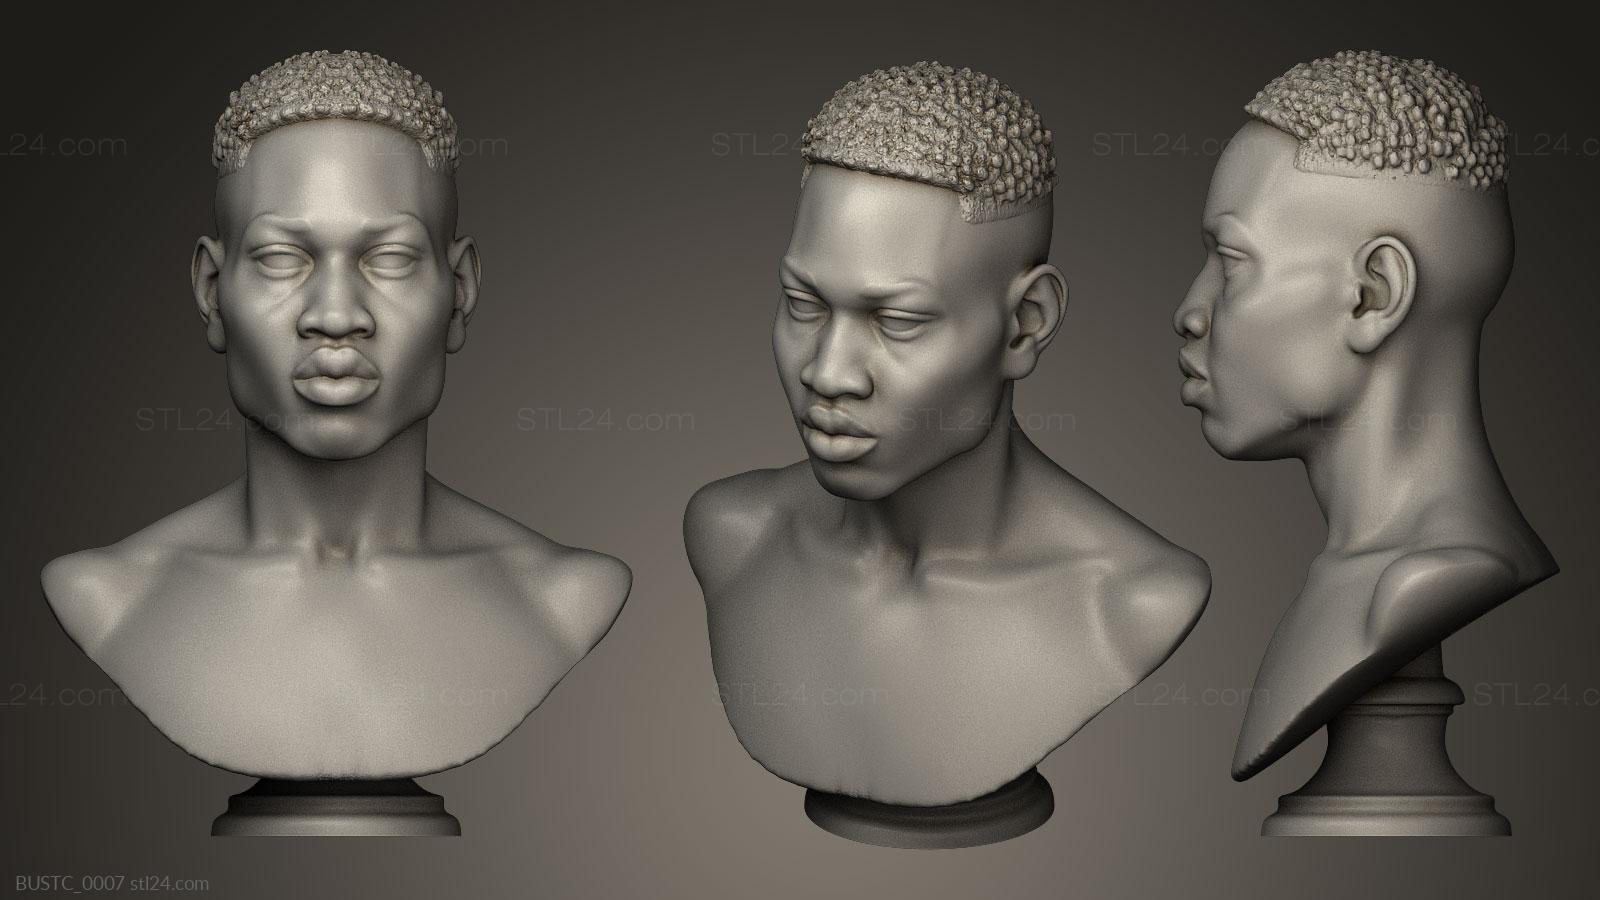 Бюсты и барельефы известных личностей (Ахмад Арбери, BUSTC_0007) 3D модель для ЧПУ станка